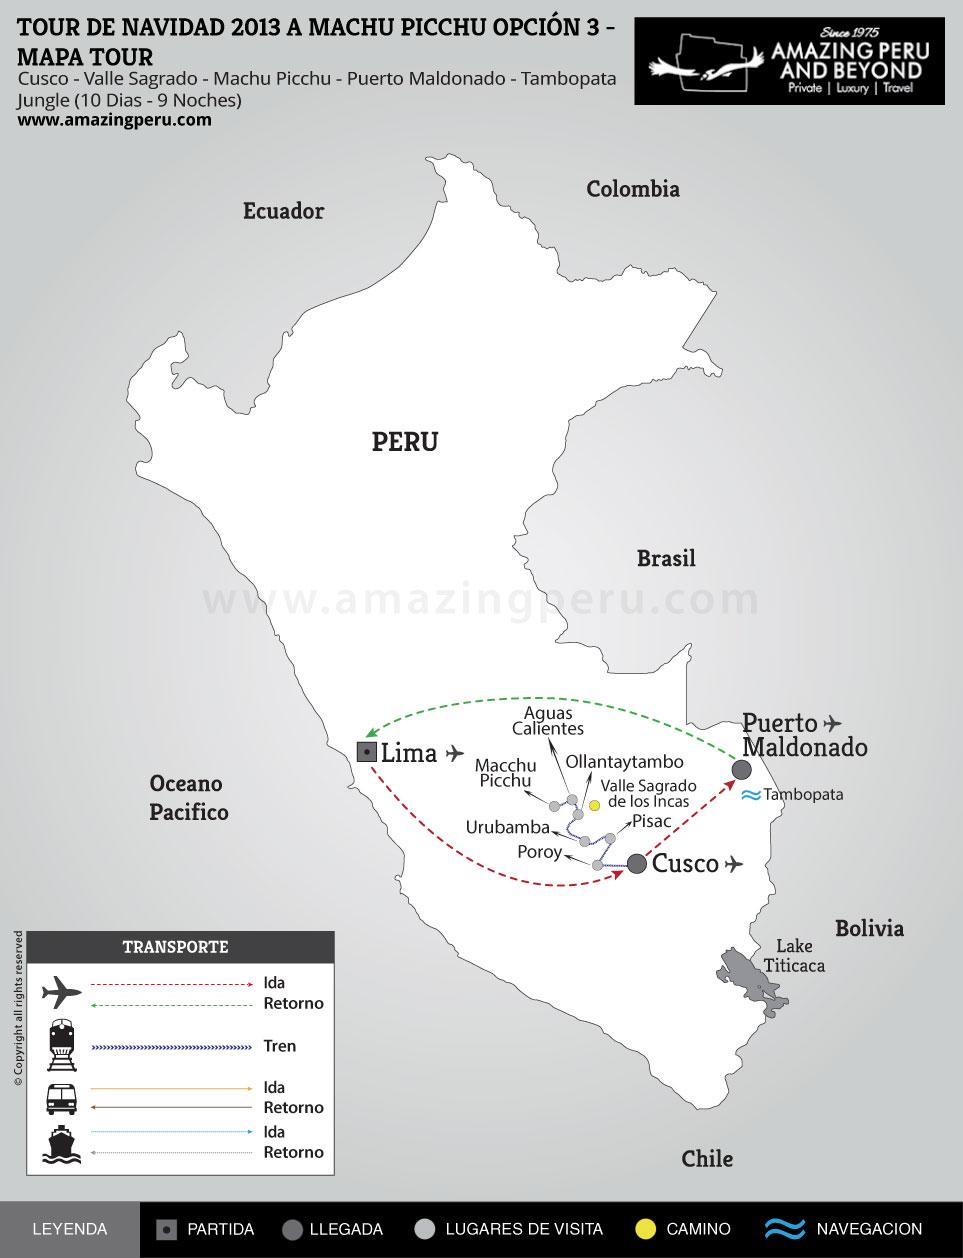 Tour de Navidad 2022 a Machu Picchu - Opción 3